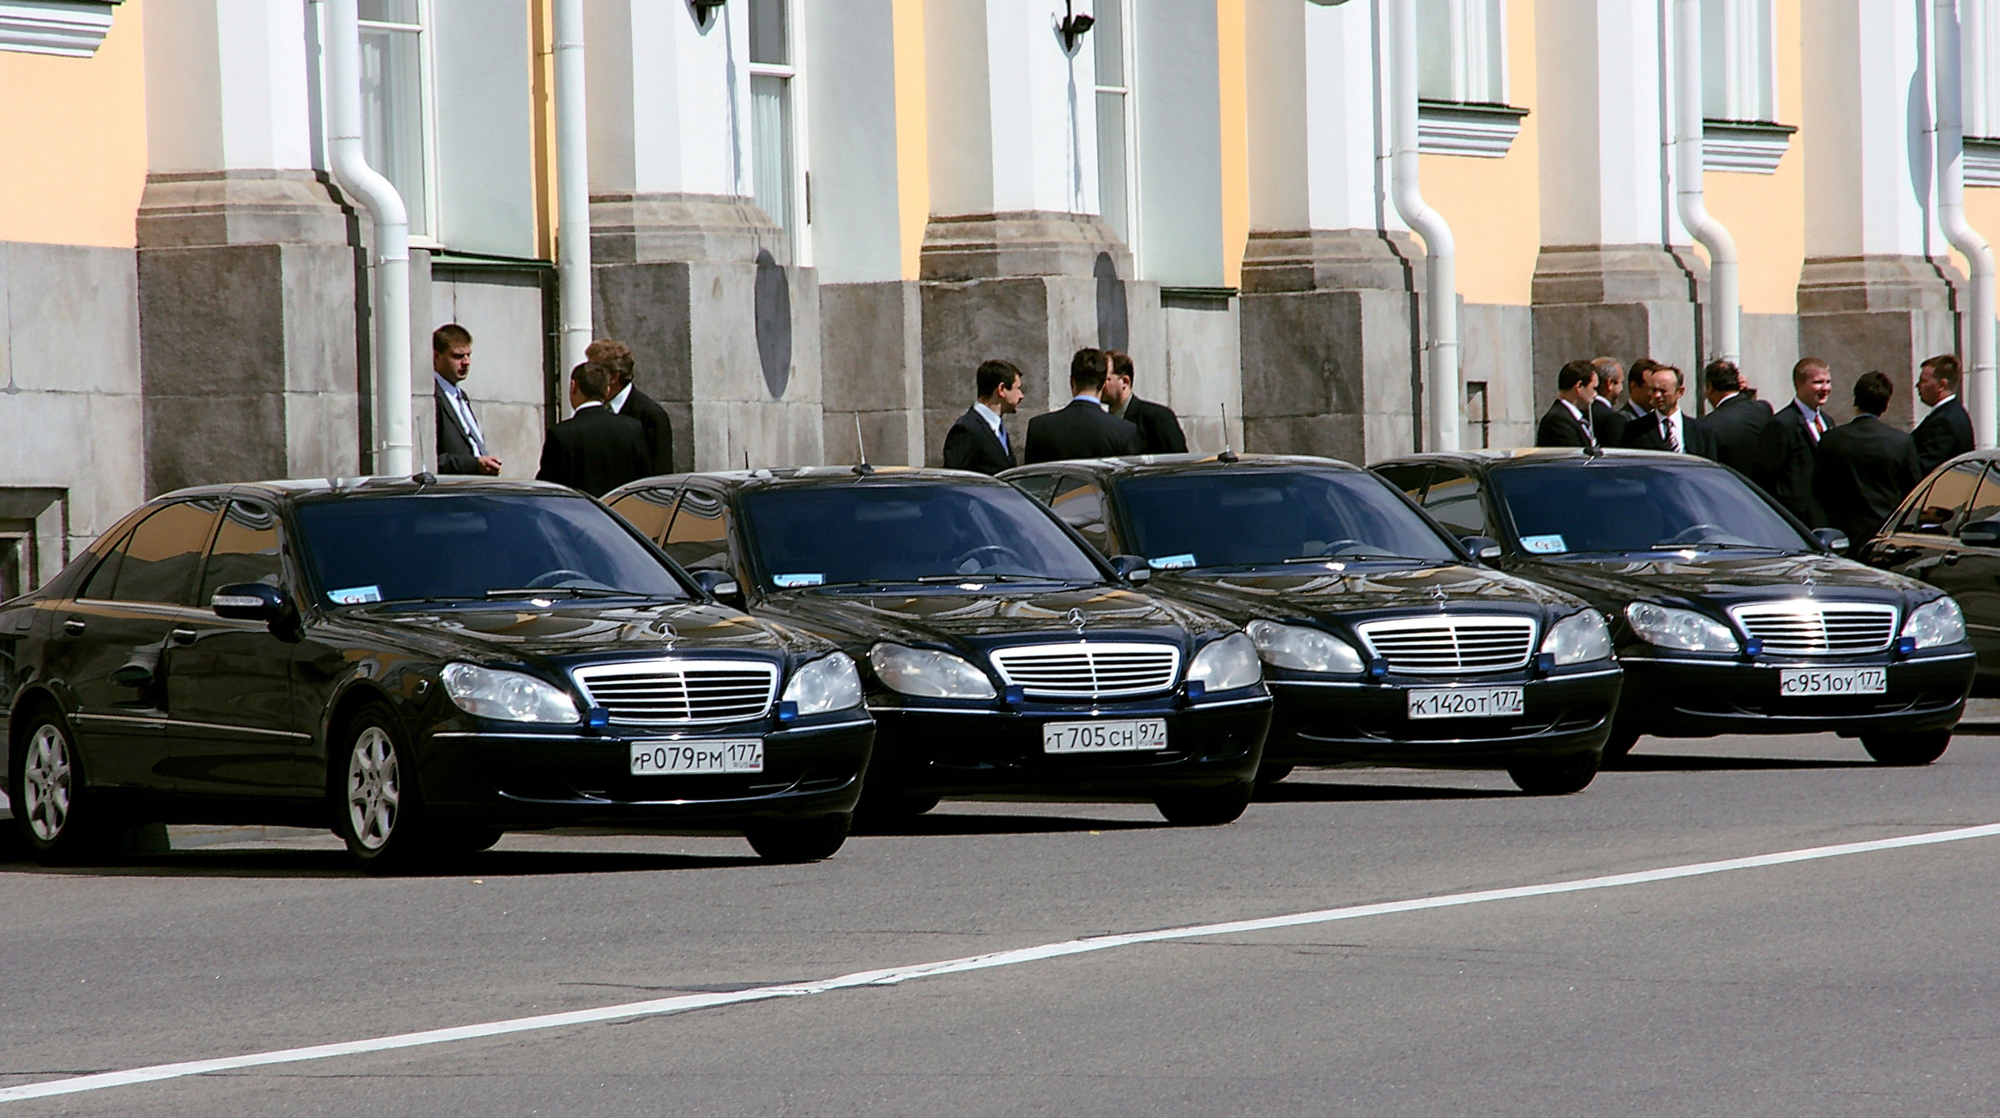 Предоставляется автомобиль. Автомобиль дипломата. Машина дипломата России. Машины британских дипломатов. Автомобиль иностранных дипломатов.